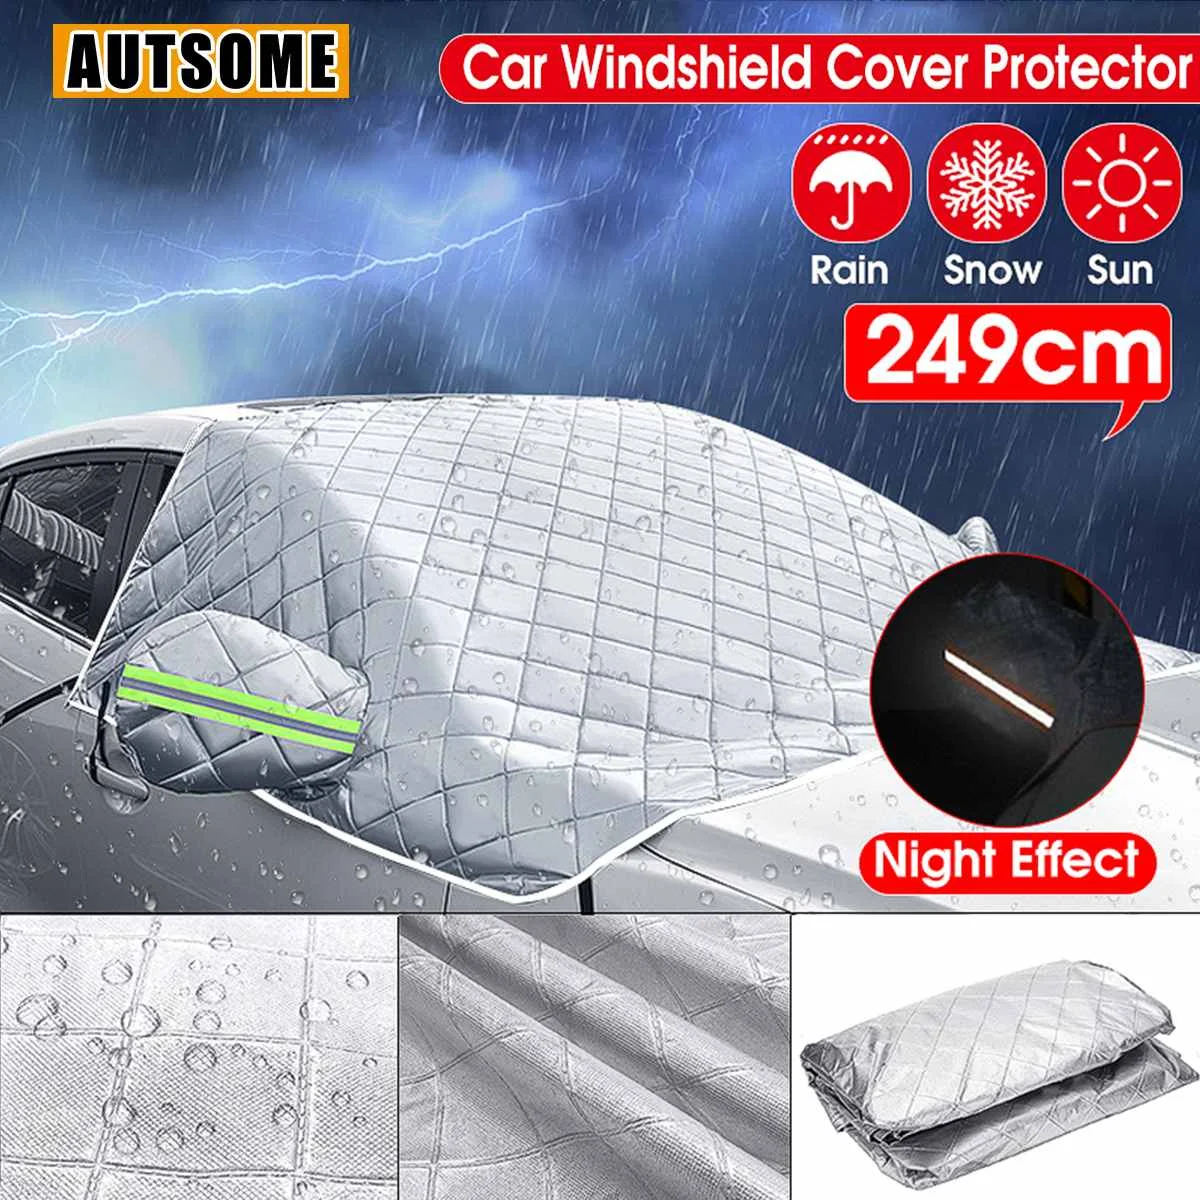 

Универсальный светоотражающий чехол на лобовое стекло автомобиля, утолщенный солнцезащитный козырек, защита от летнего солнца, дождя, пыли